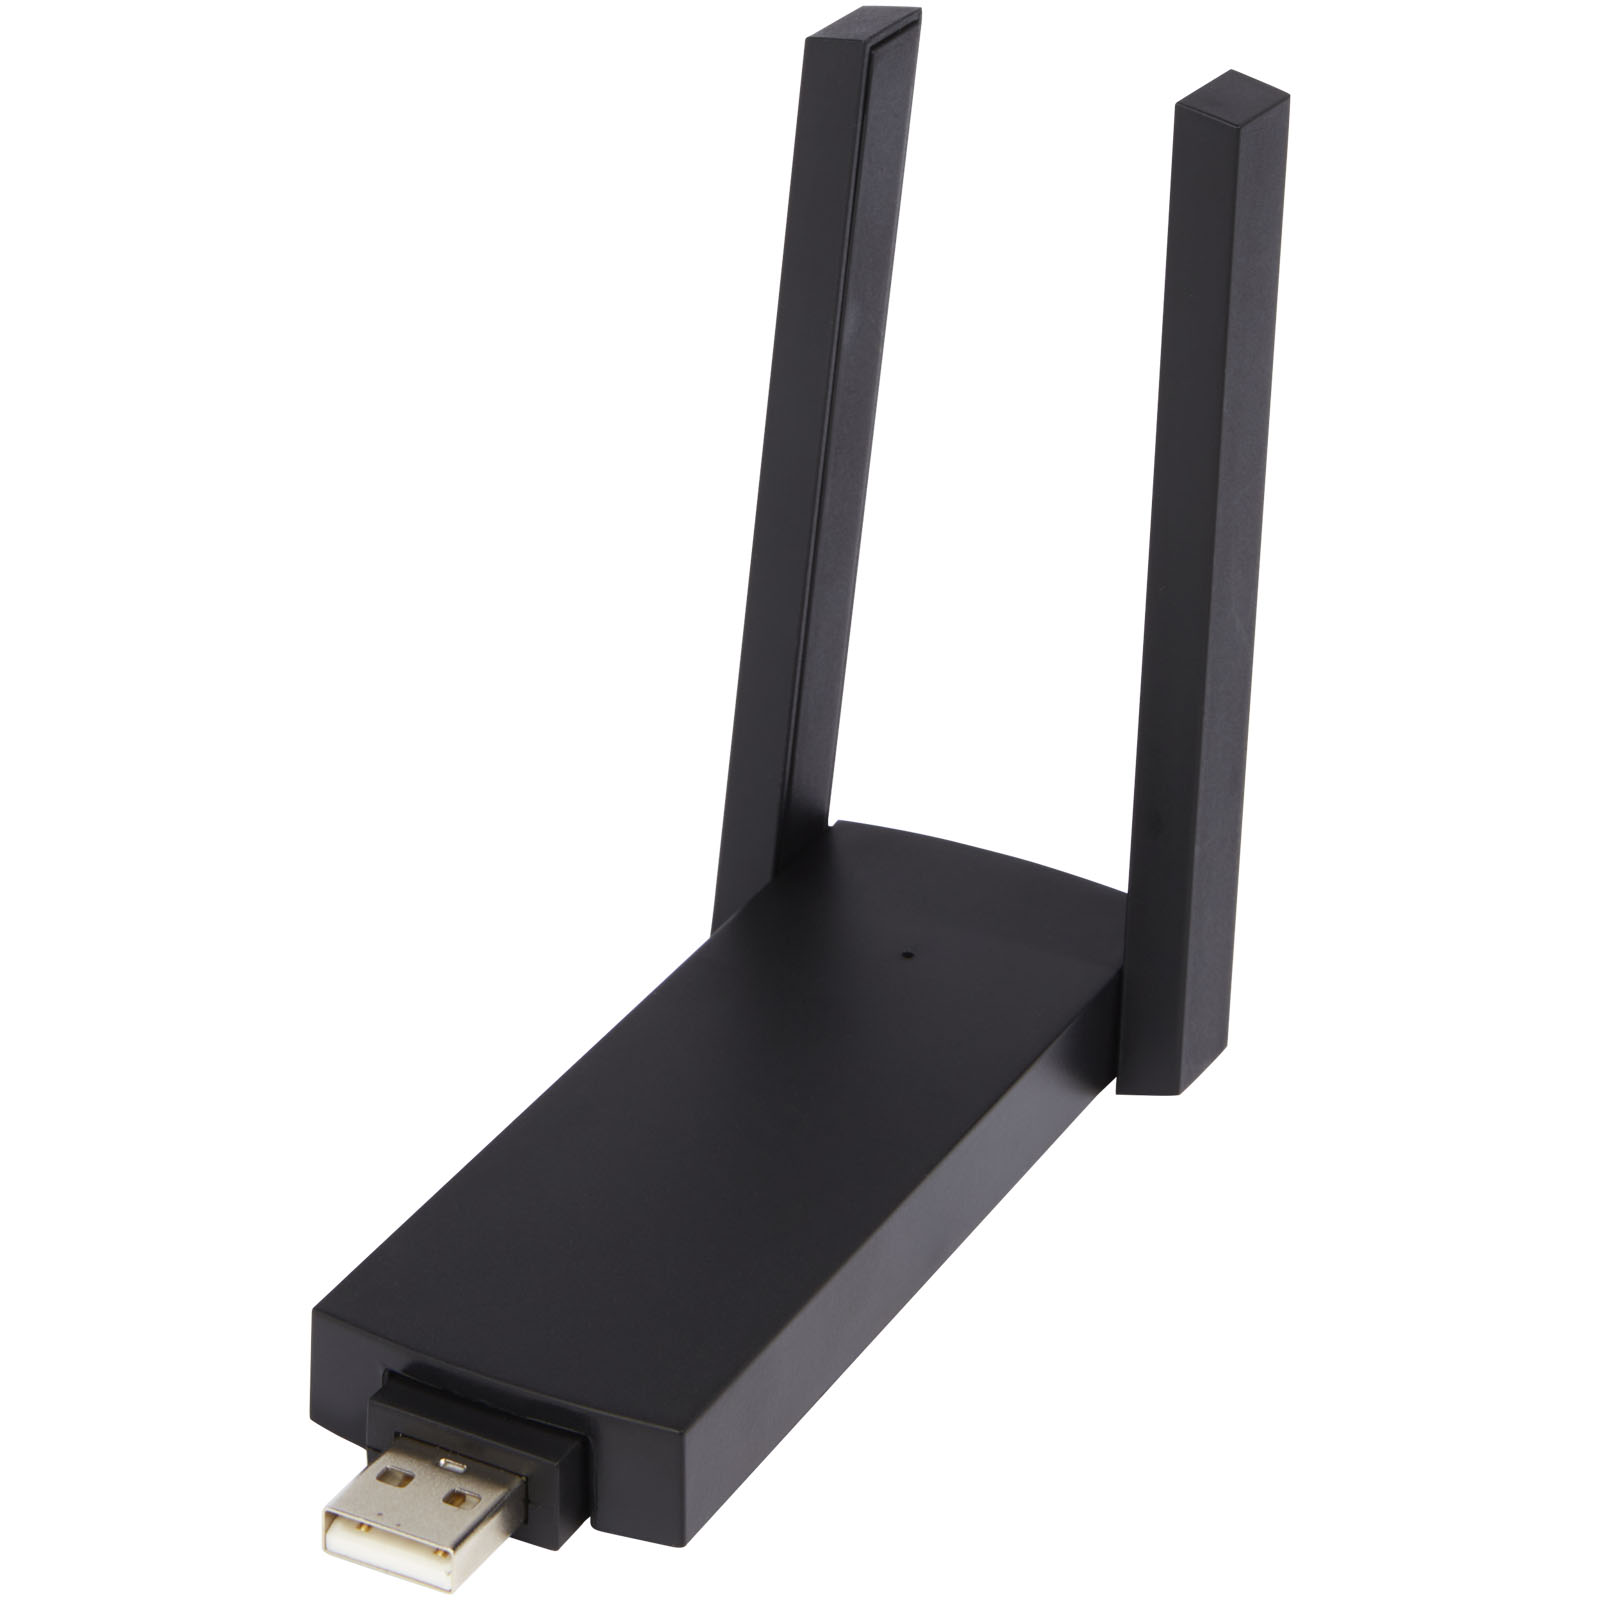 Technology - ADAPT single band Wi-Fi extender